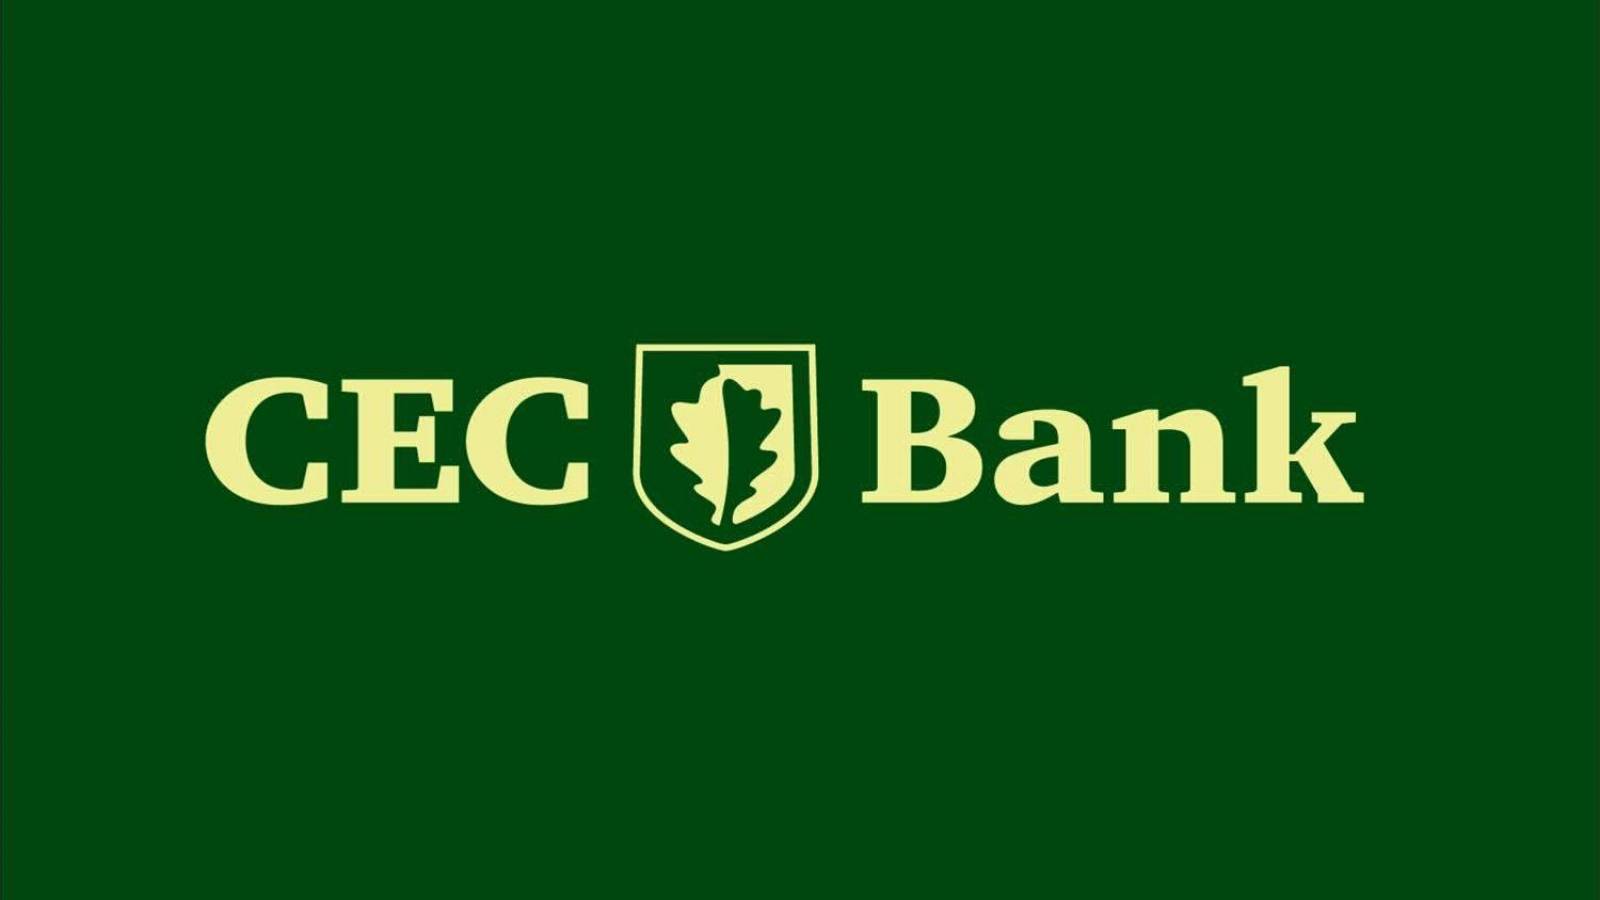 CEC-pankin henkilöllisyys